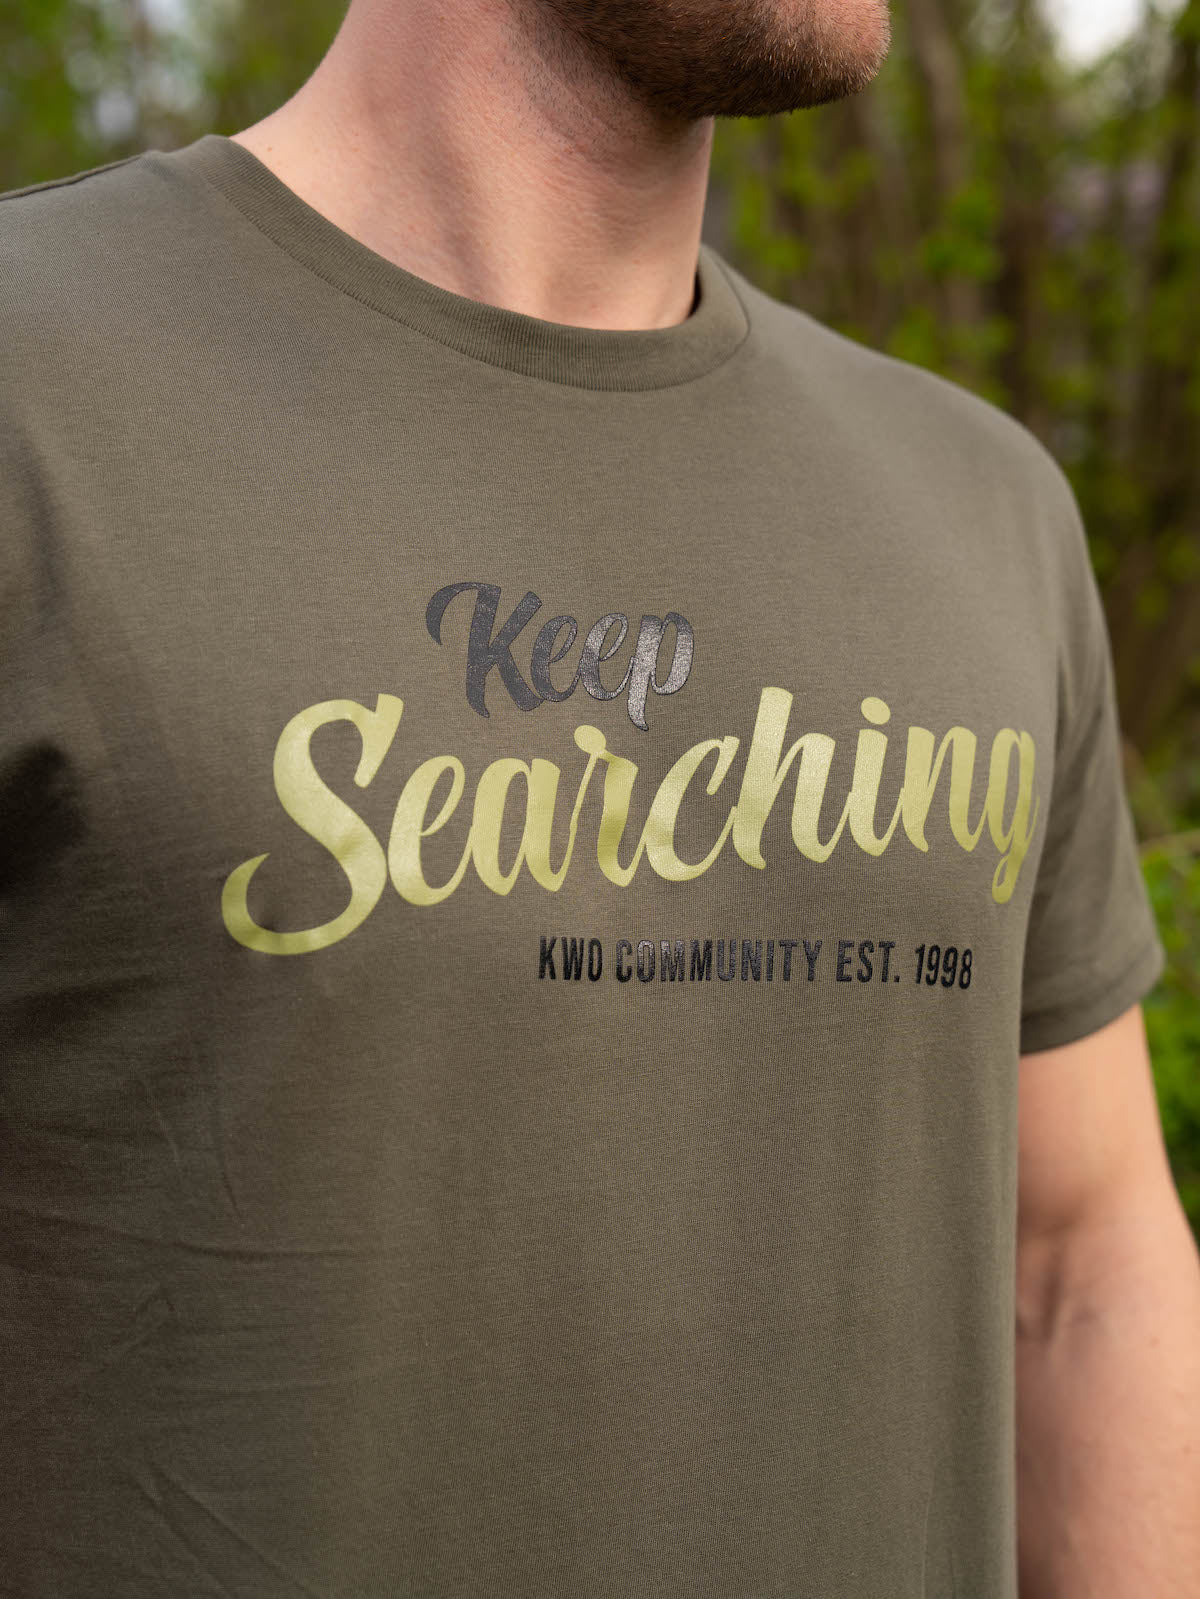 
                  
                    Keep Searching logo
                  
                